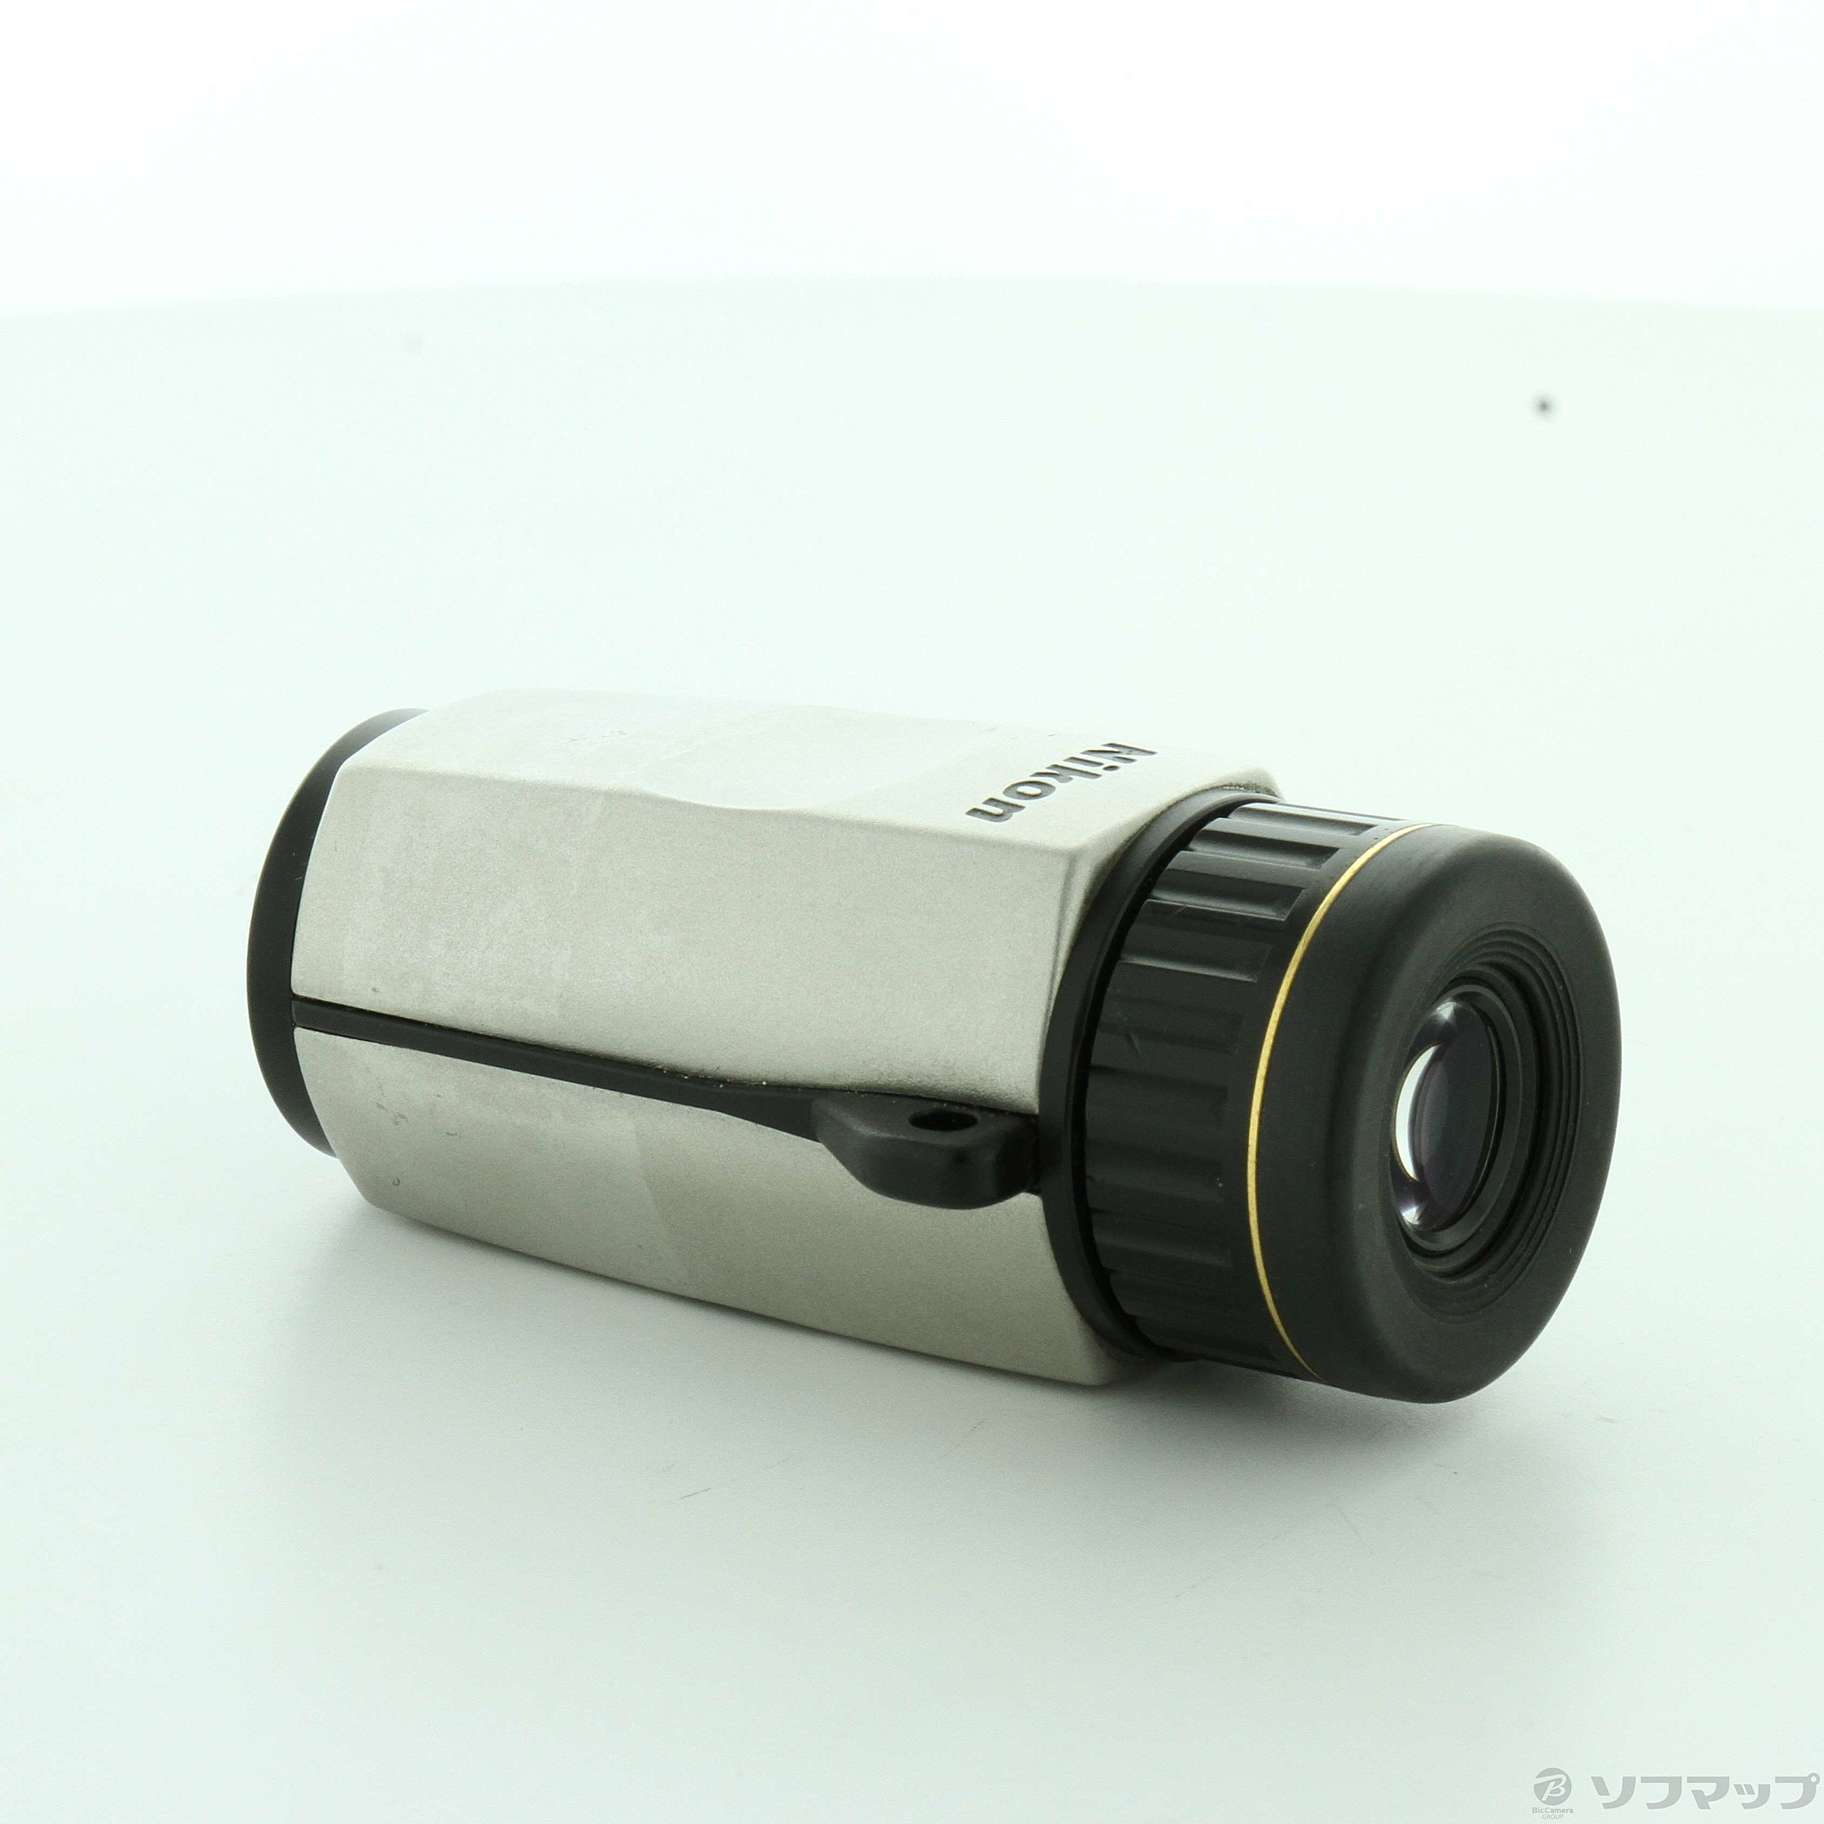 中古品)Nikon 多機能単眼鏡 モノキュラーII メタリック 6×15D (日本製) 6倍単眼鏡